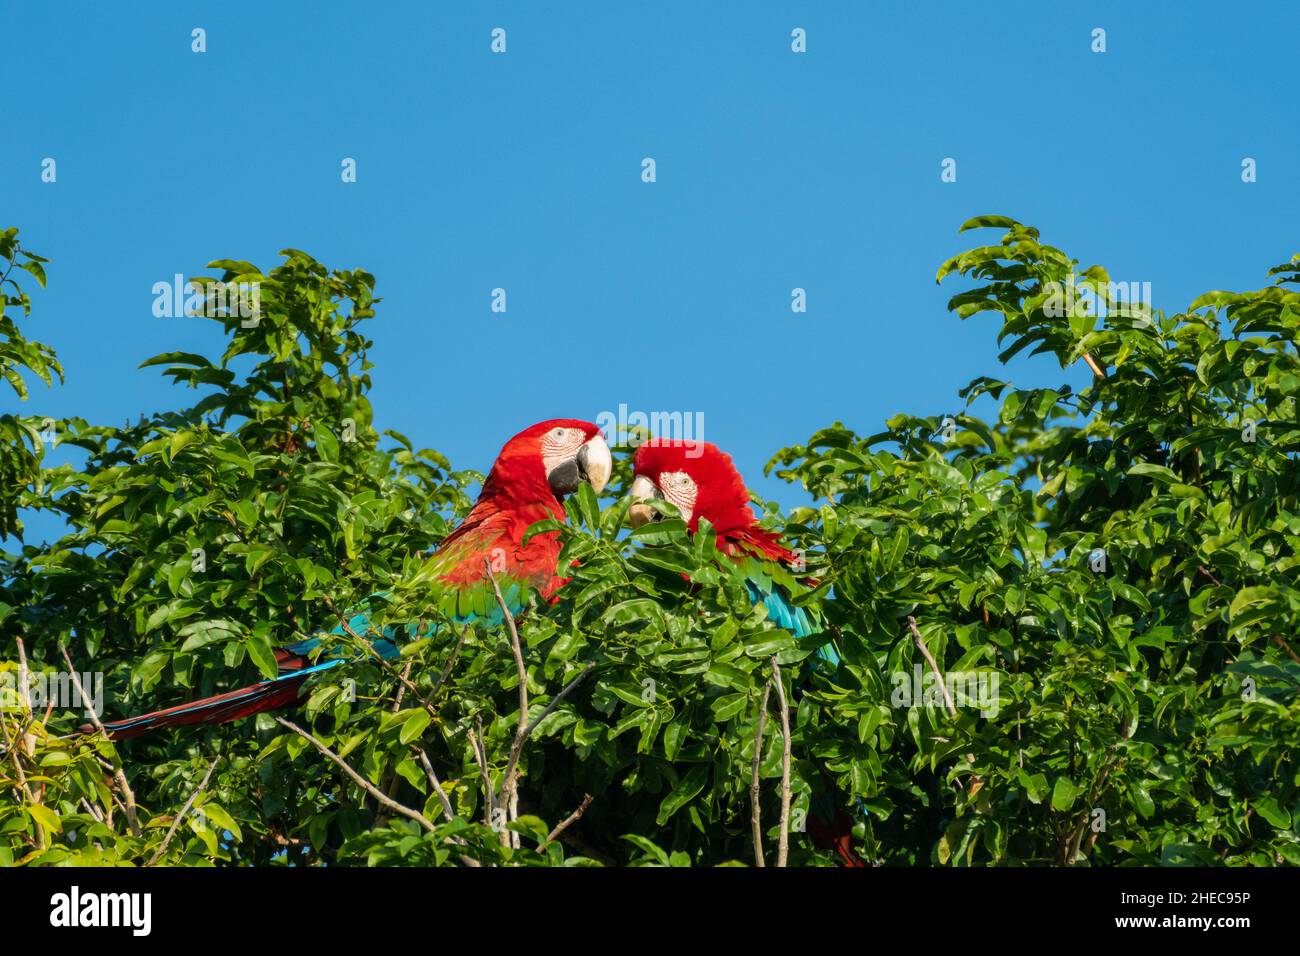 Zwei rote und grüne Aras, Ara chloropterus, kuscheln und pflügen oben auf einem Baum. Stockfoto